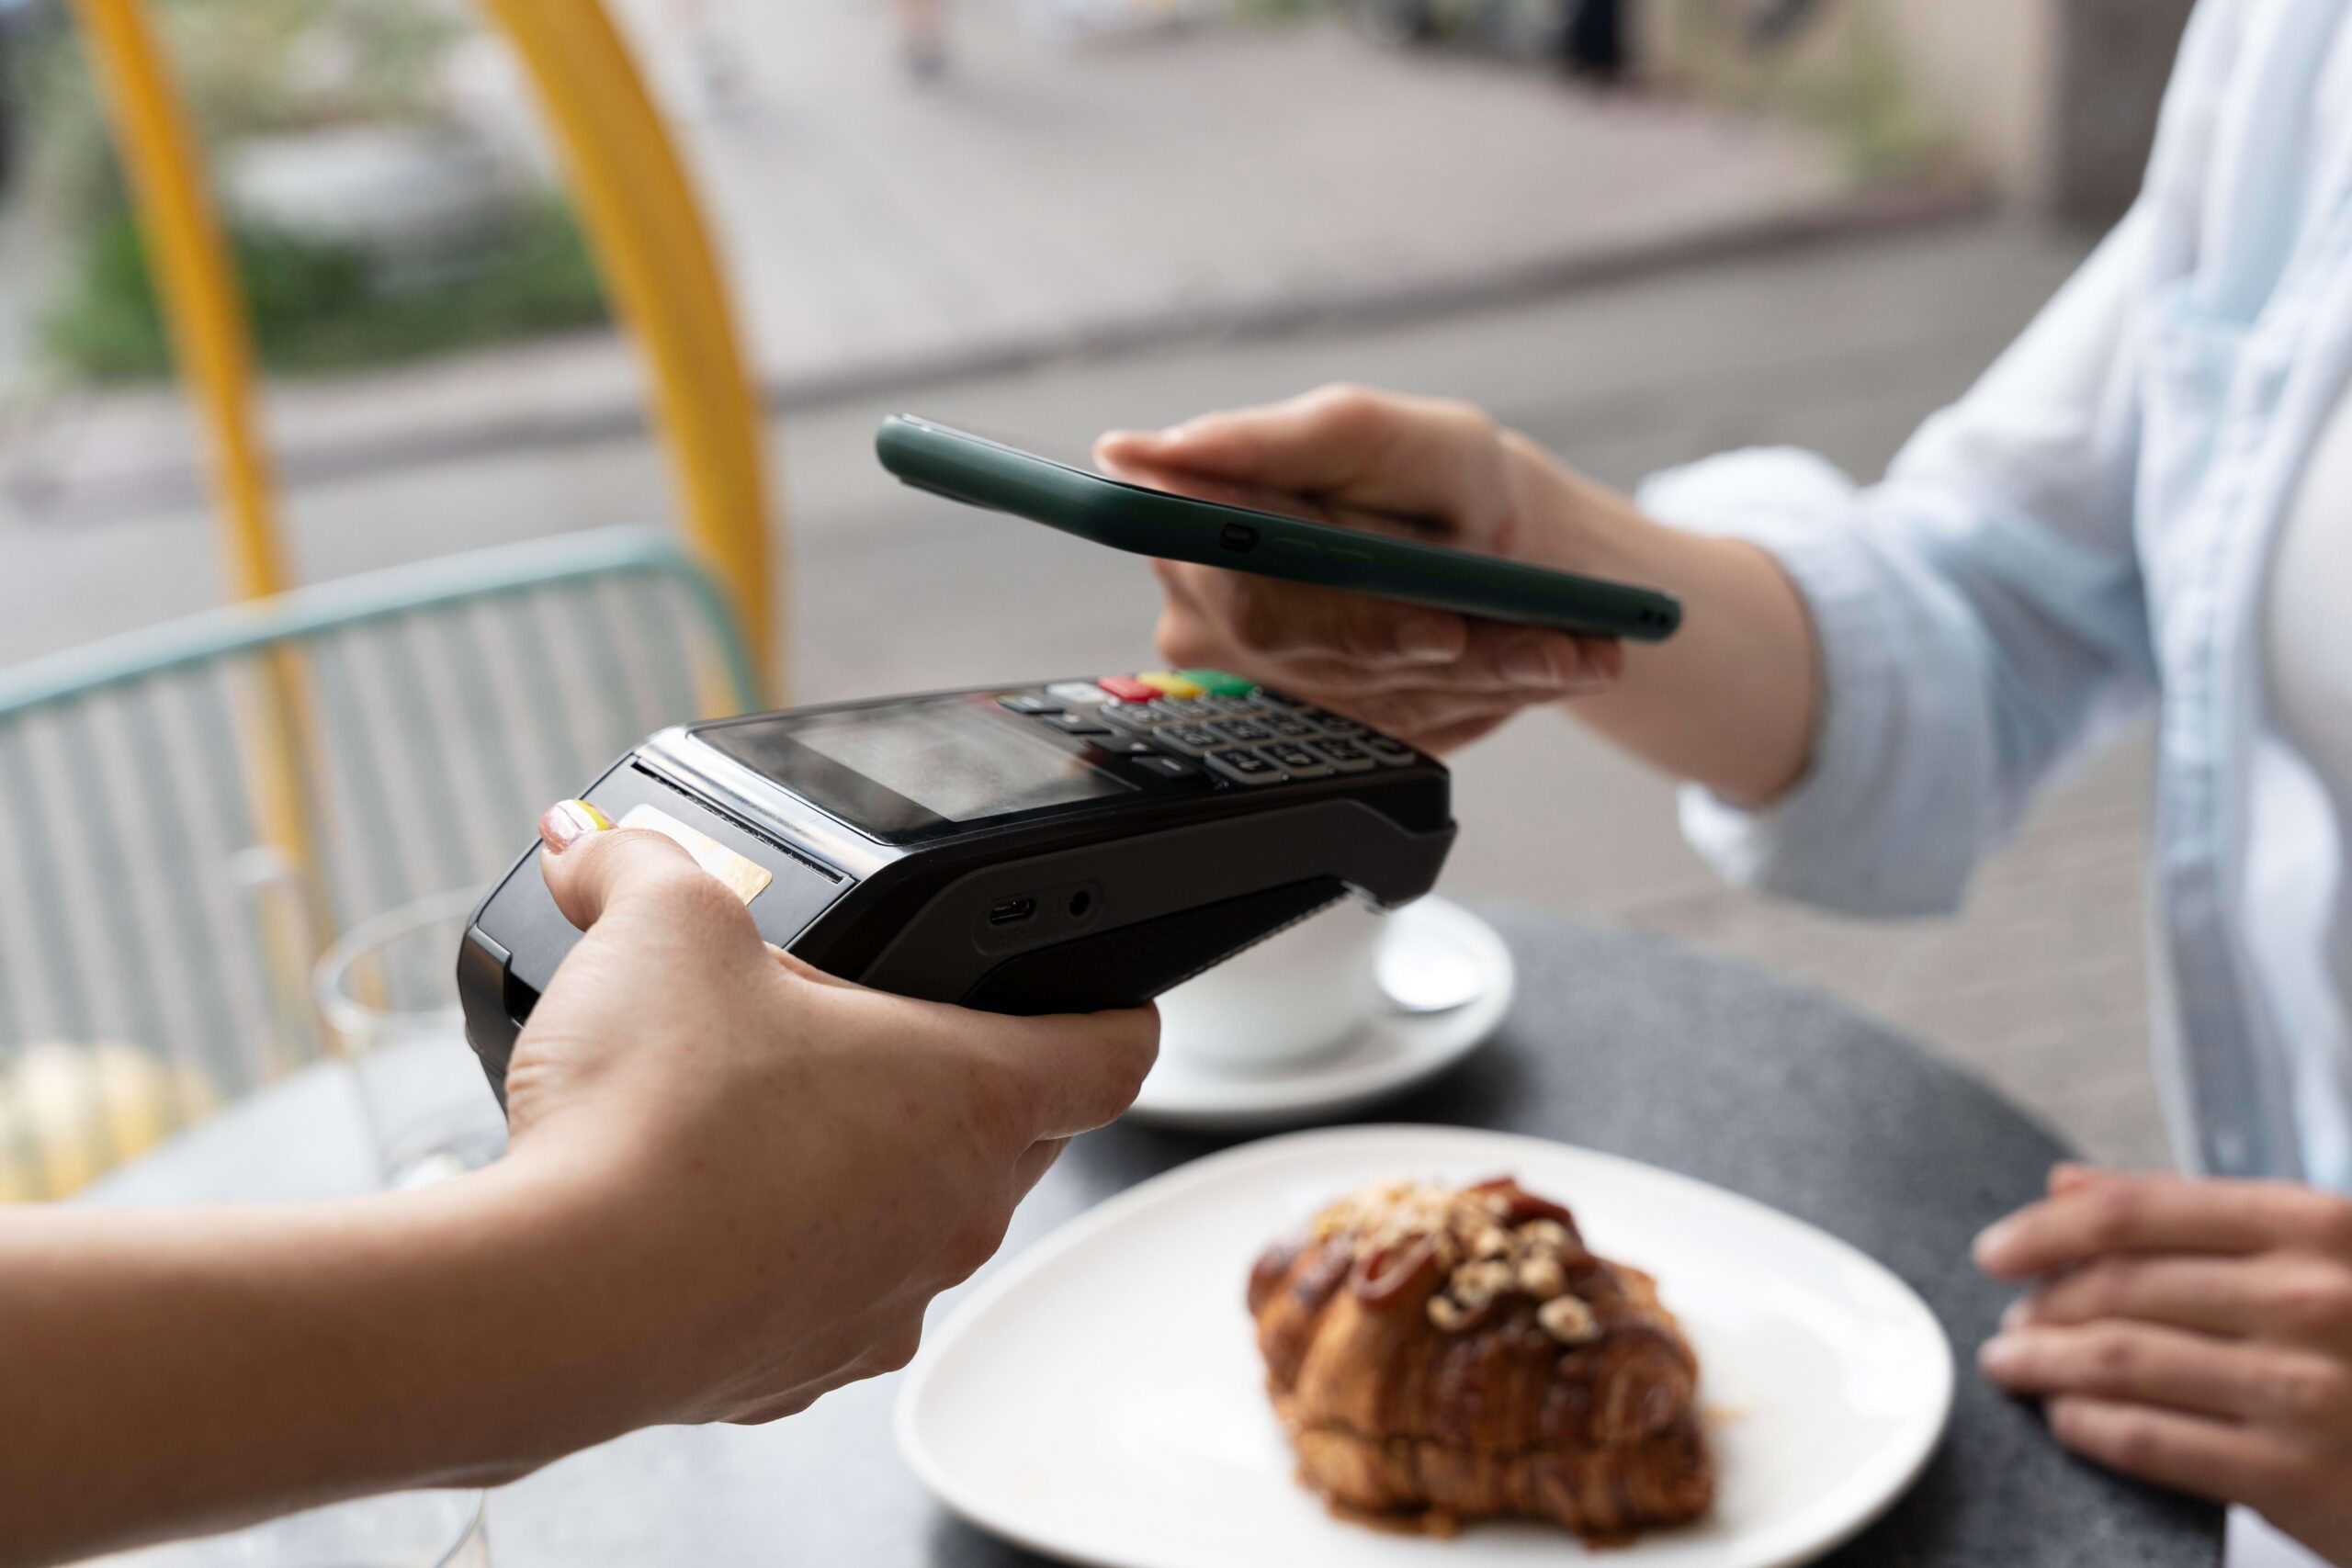 Pessoa colocando smartphone próximo a uma máquina de cartão de crédito utilizando tecnologia NFC de aproximação